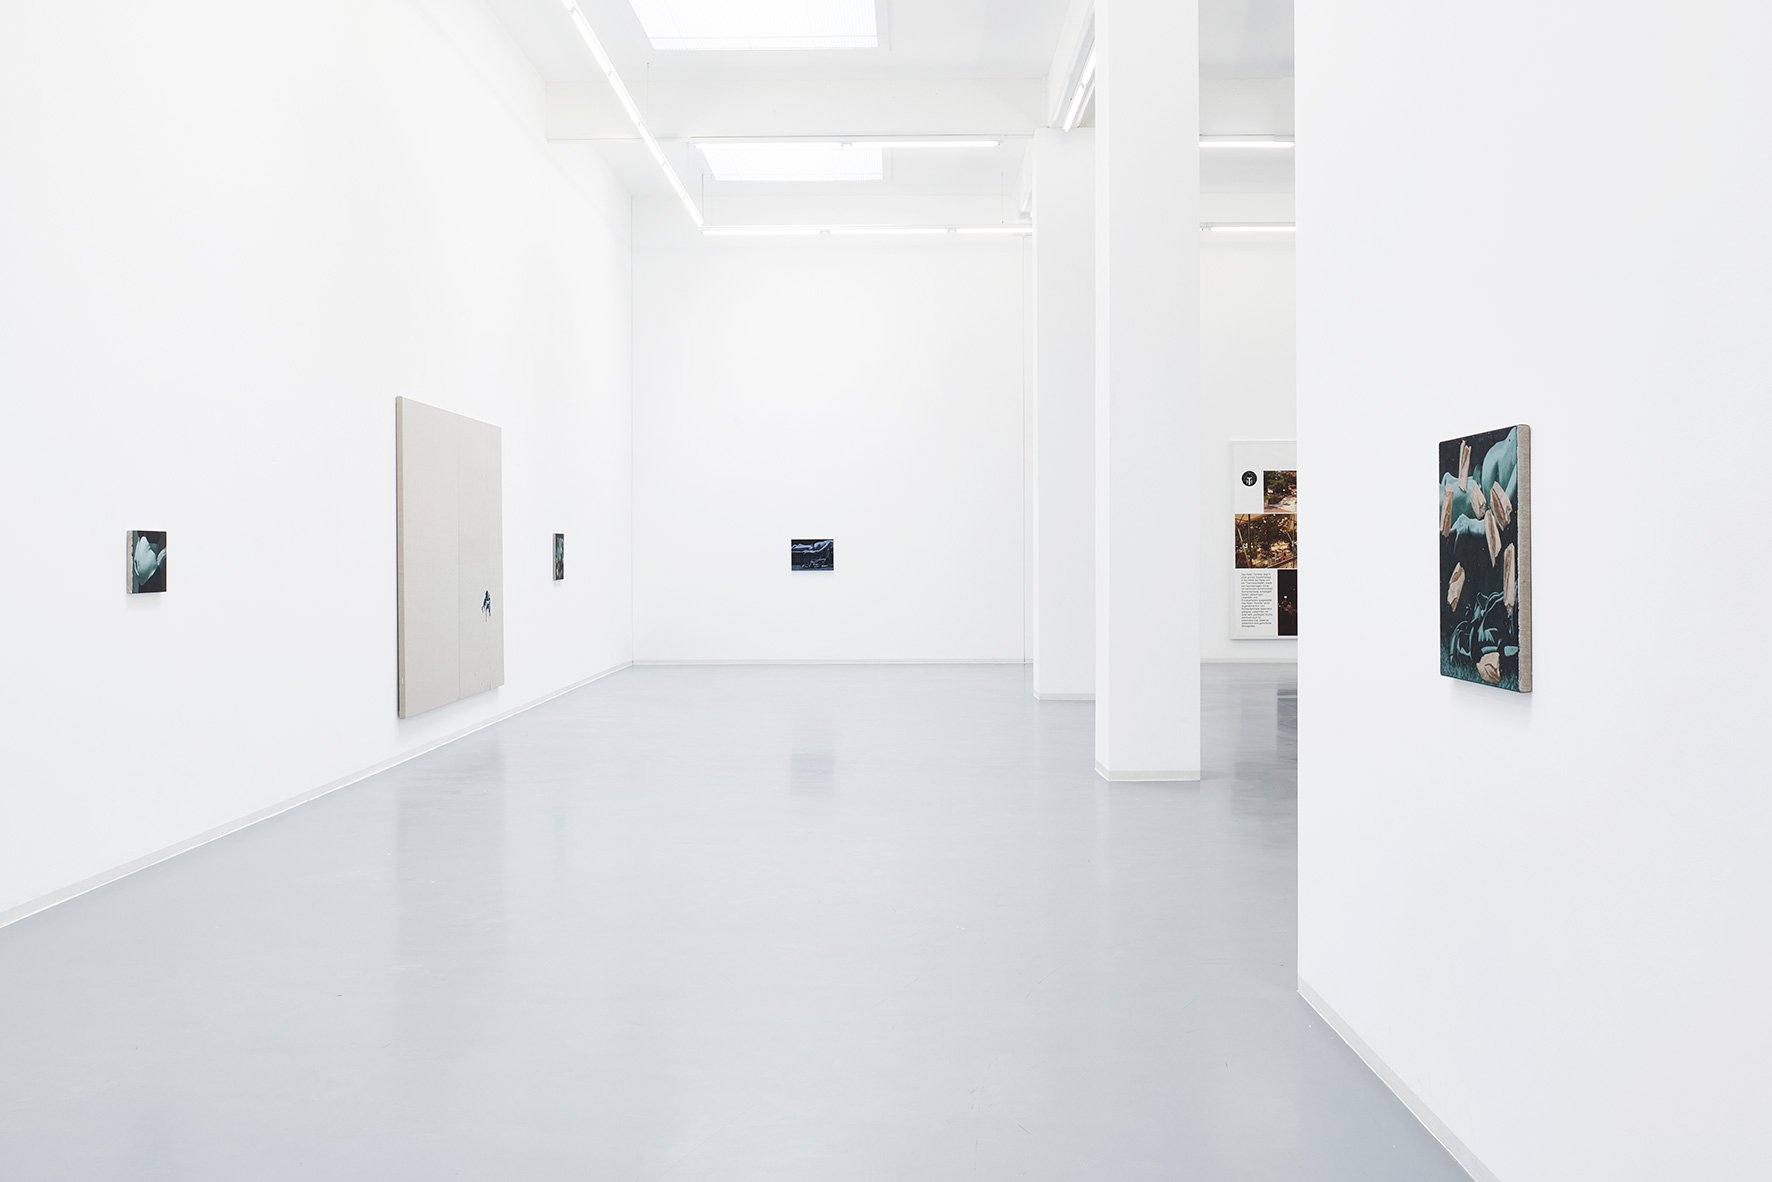 Oliver Osborne: Bonnie, Ausstellungsansicht, Bonner Kunstverein, 2018. Foto: Mareike Tocha